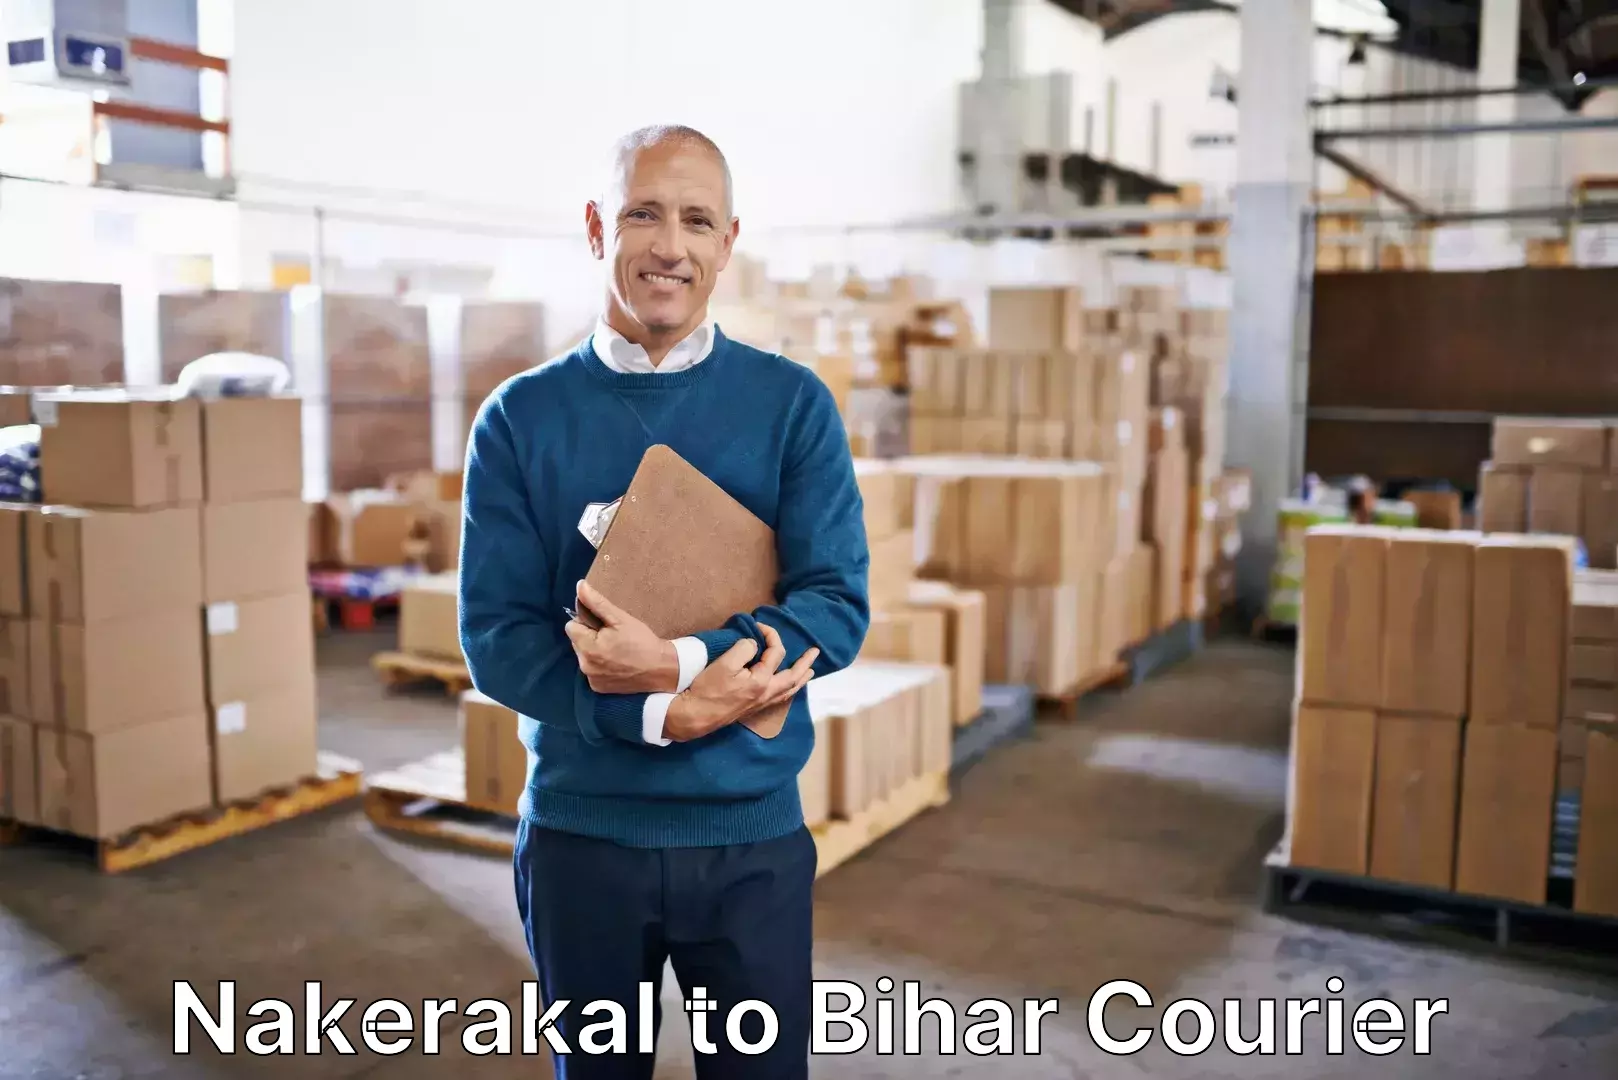 Hassle-free luggage shipping Nakerakal to Bakhtiarpur